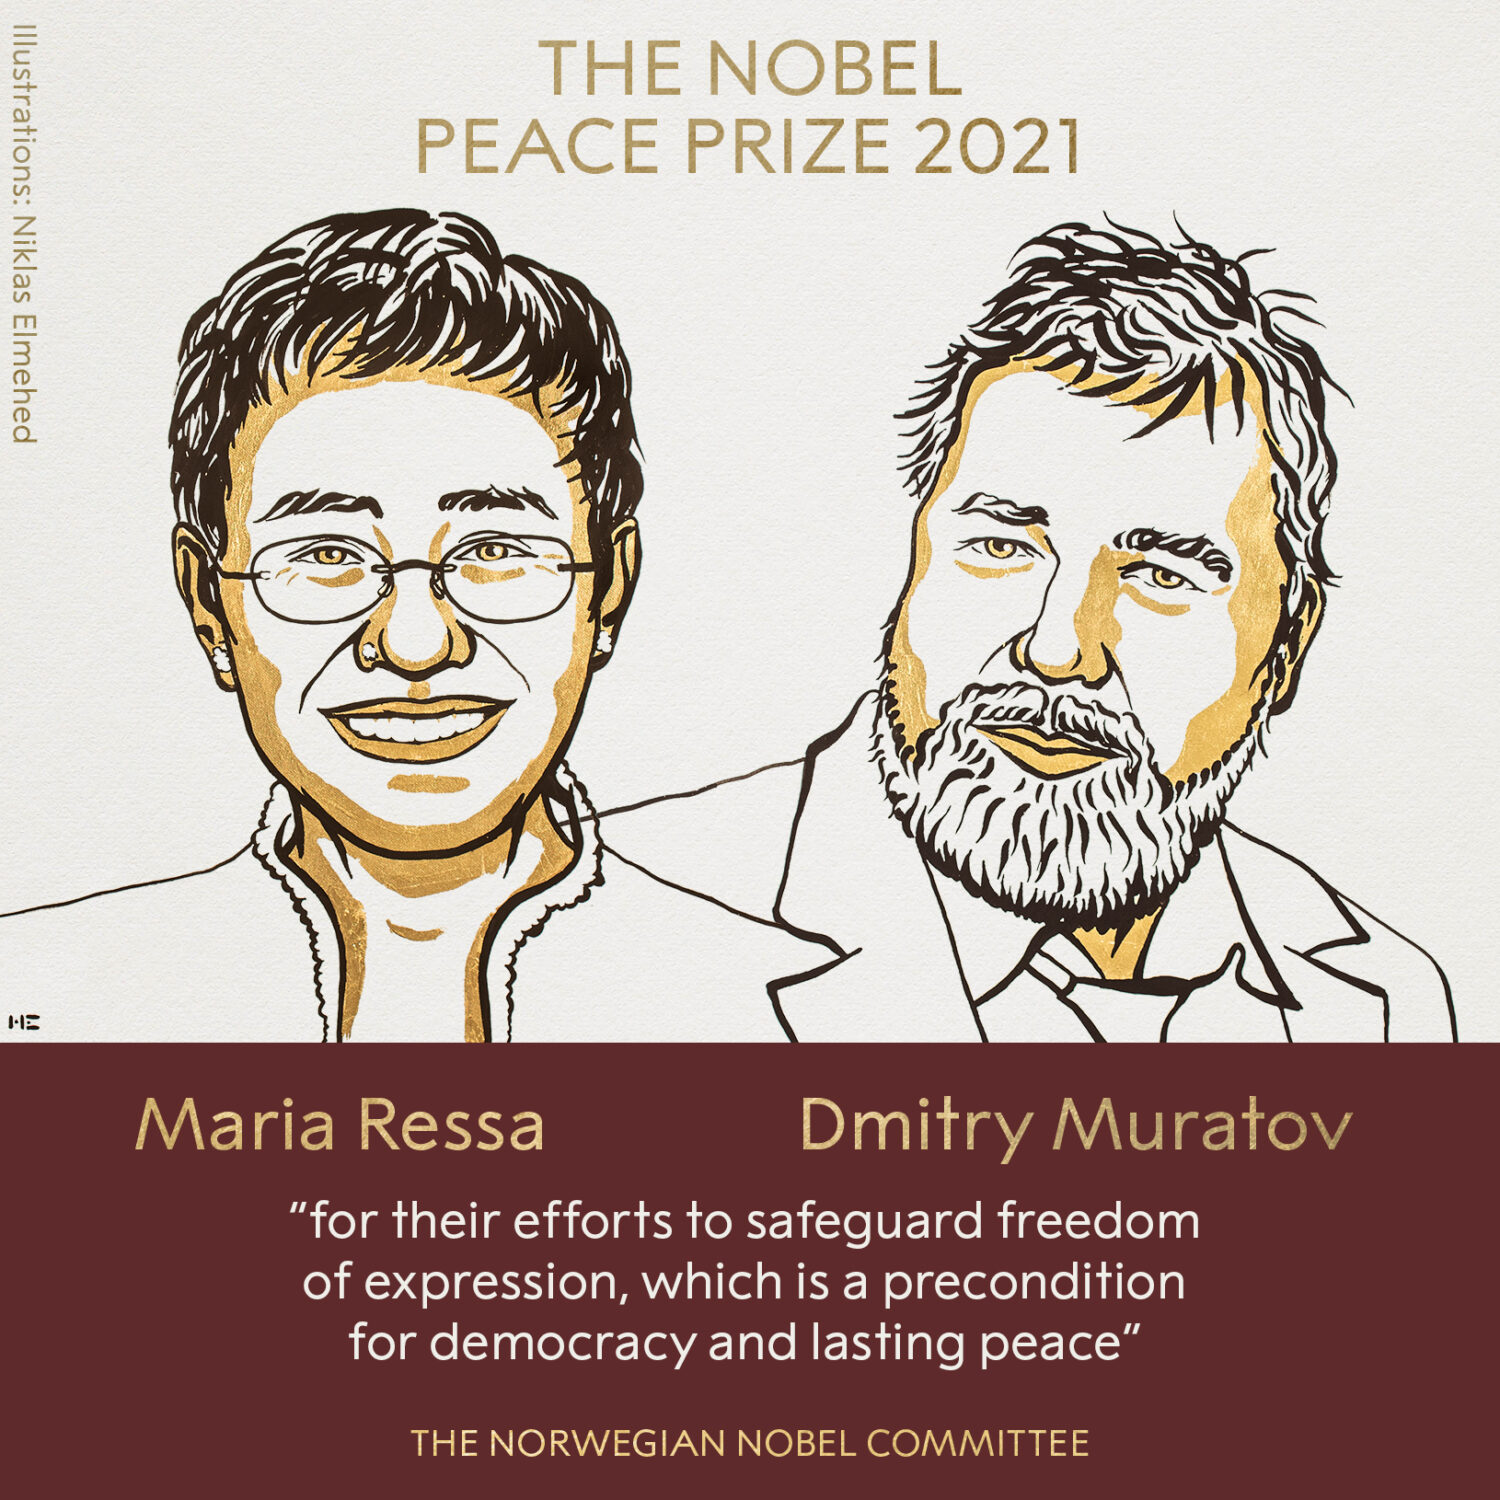 Στους δημοσιογράφους Μαρία Ρέσα και Ντμίτρι Μουράτοφ το Νόμπελ Ειρήνης 2021